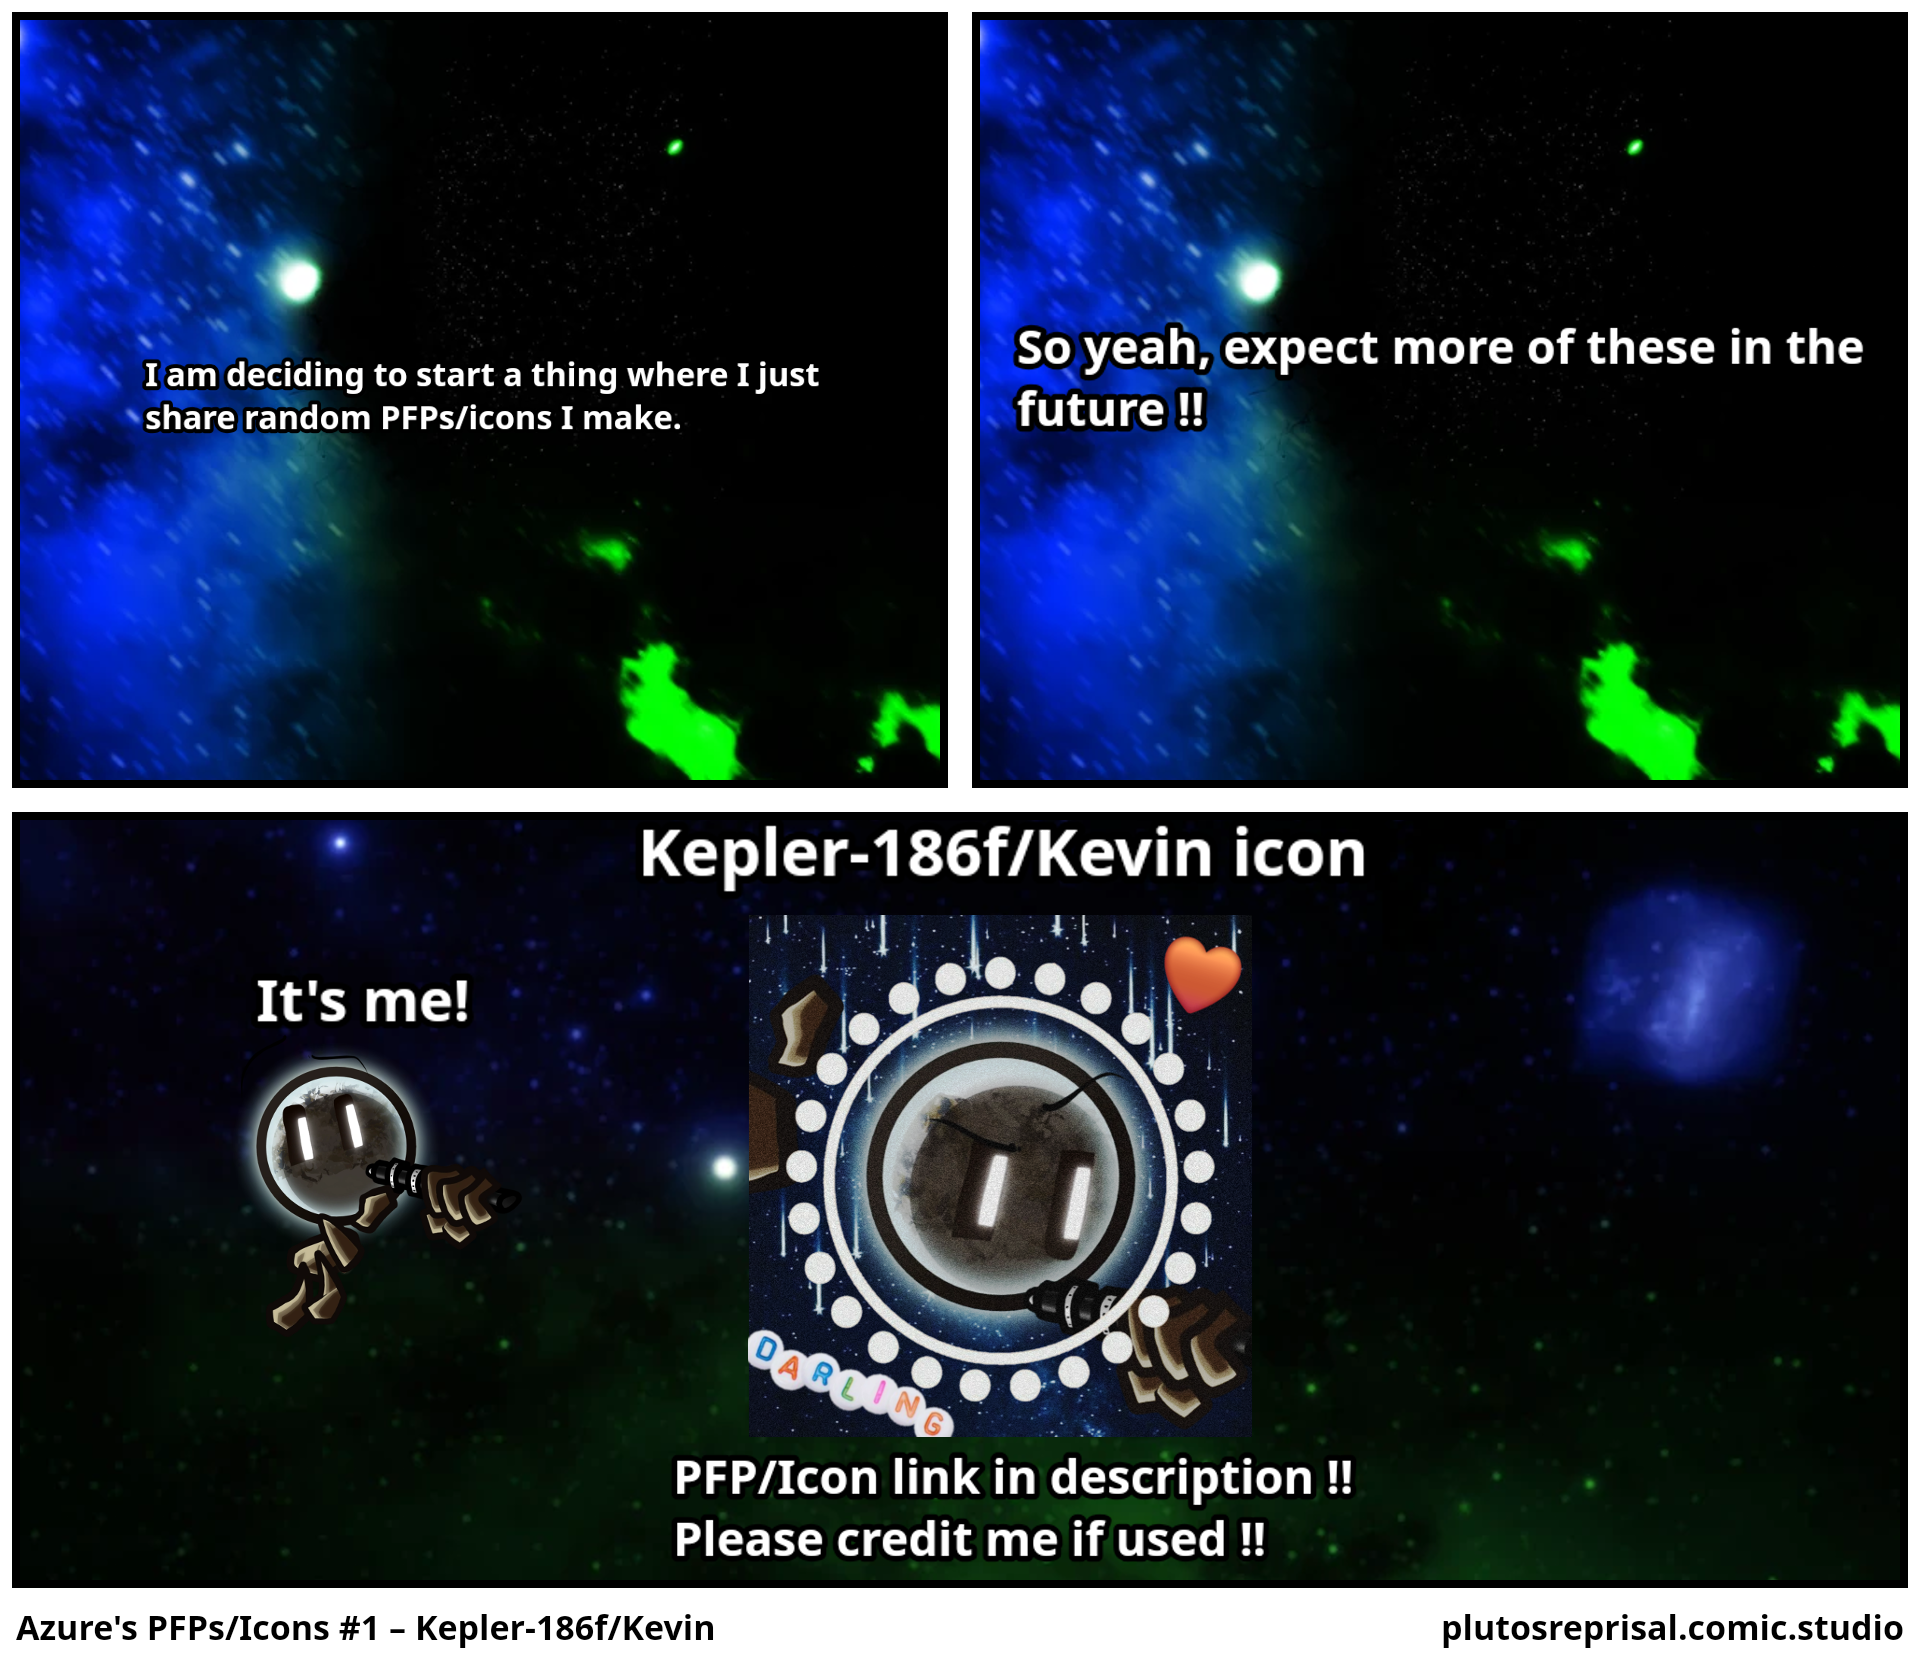 Azure's PFPs/Icons #1 – Kepler-186f/Kevin